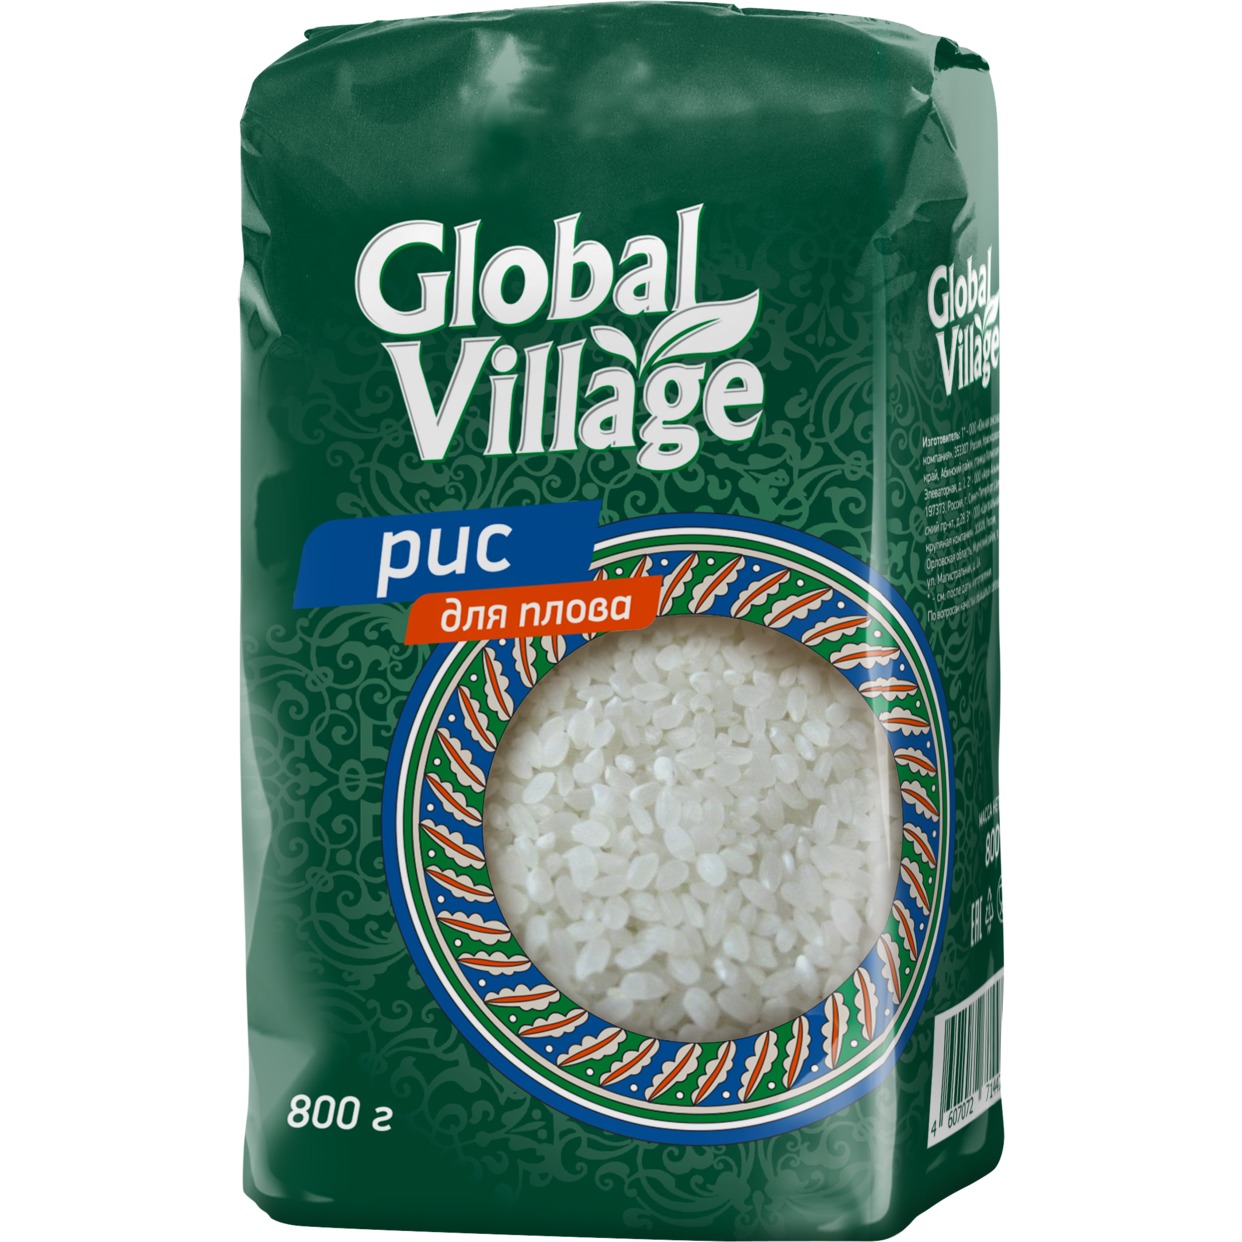 Крупа рисовая шлифованная, обработанная маслом, первый сорт: Рис для плова под Т.З. "Global Village" 800г по акции в Пятерочке